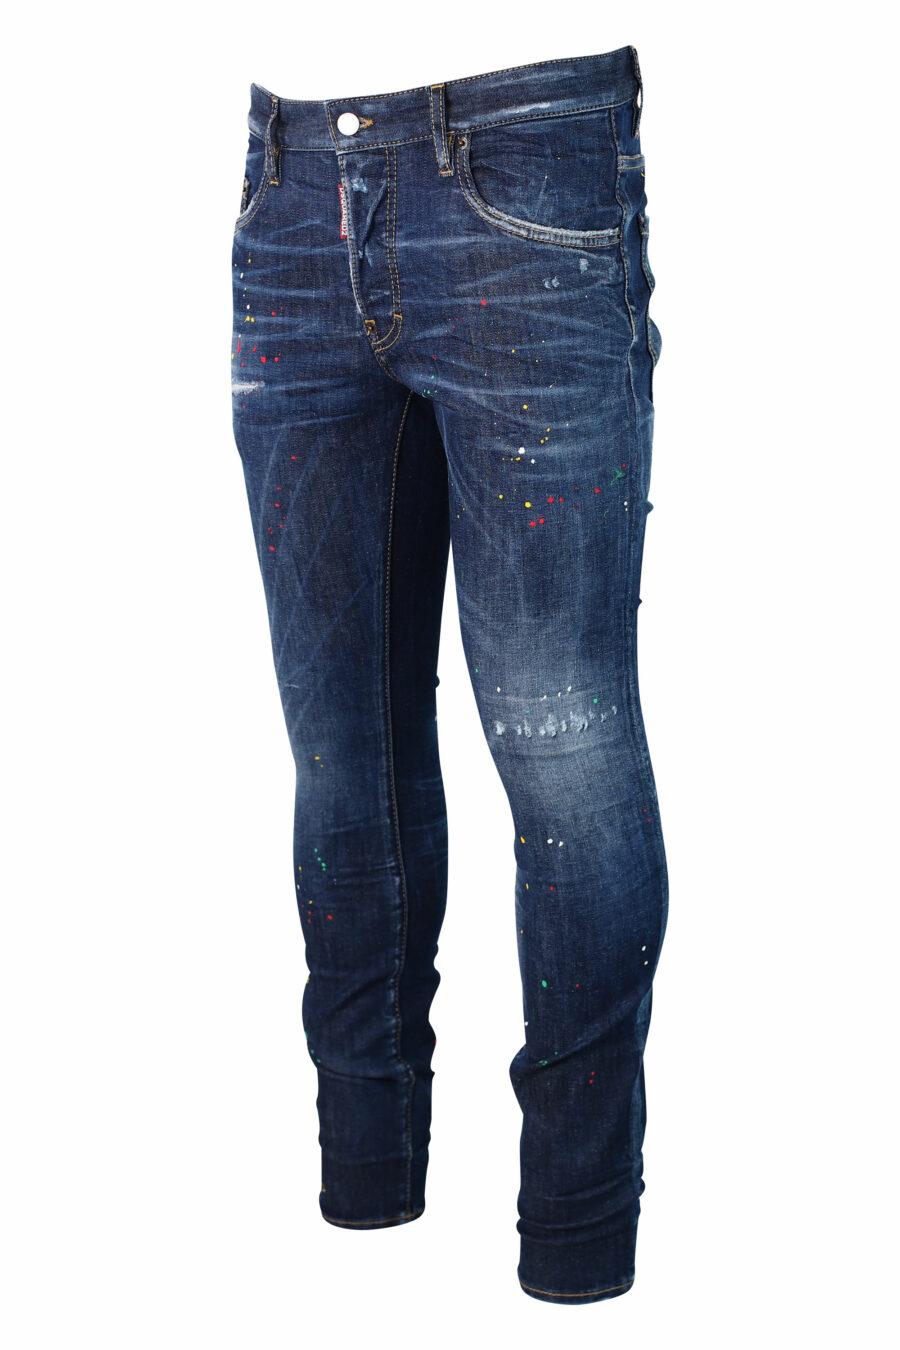 Blaue Jeans "super twinky jean" getragen "bob marley" - IMG 9923